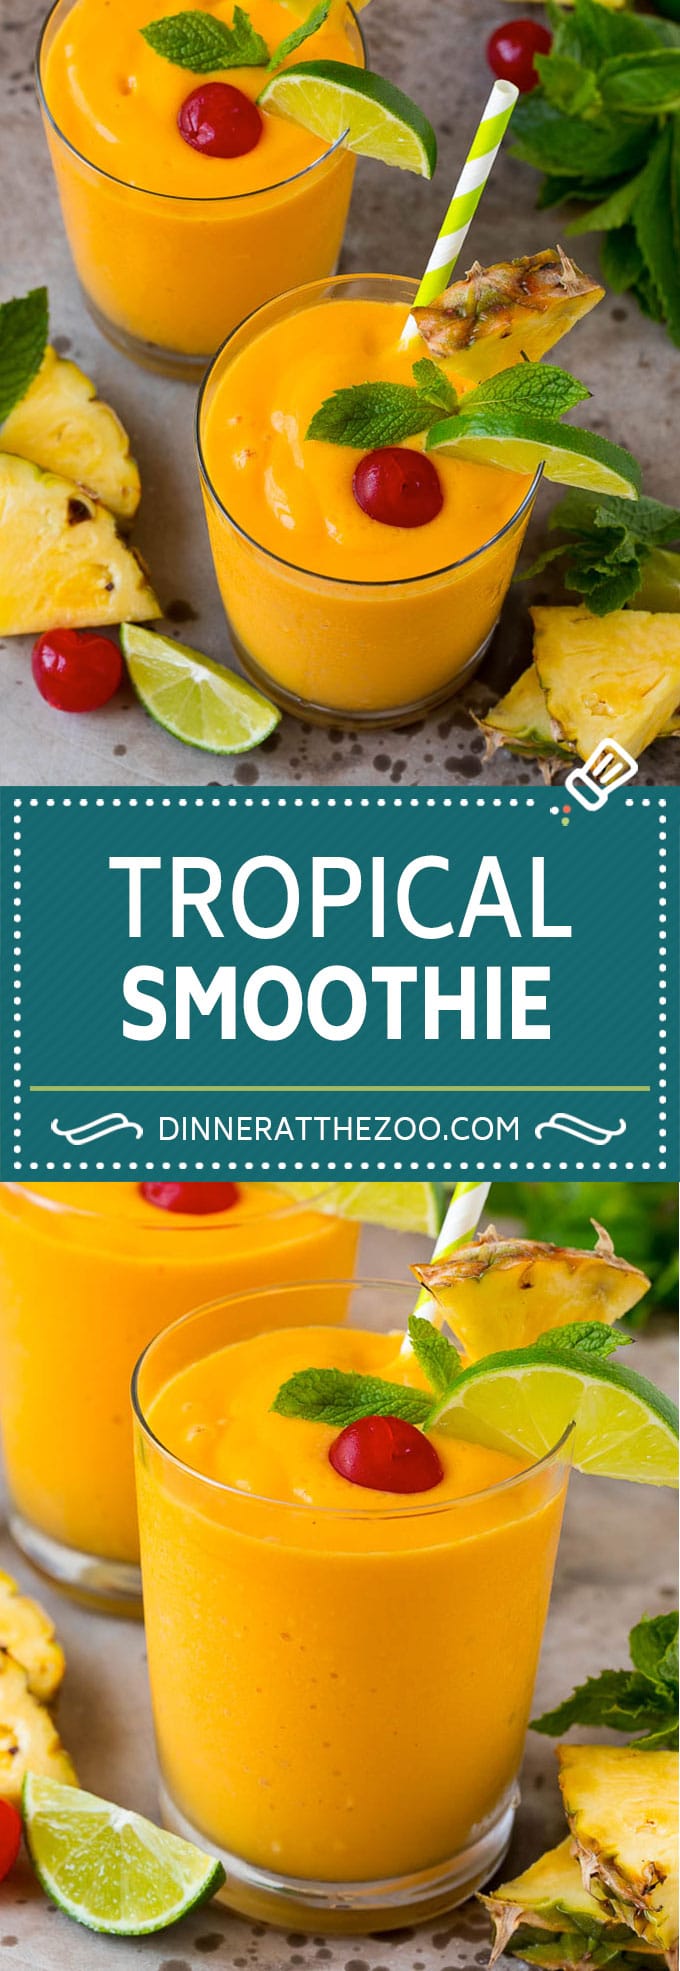 Tropical Smoothie Recipe | Mango Smoothie | Pineapple Smoothie #smoothie #mango #pineapple #banana #drink #dinneratthezoo